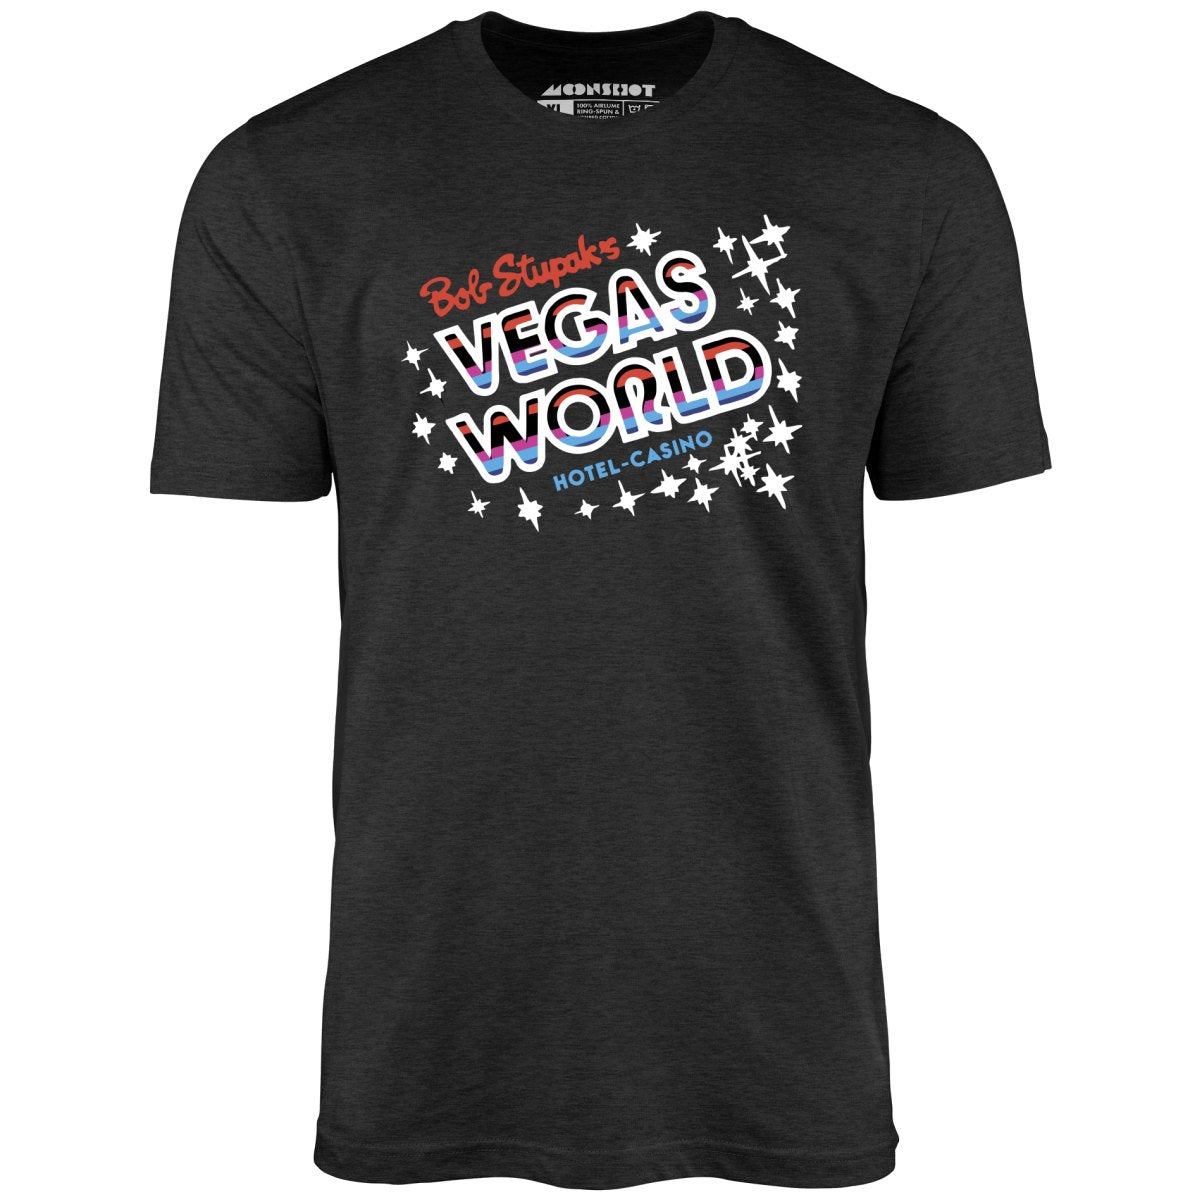 Bob Stupak's Vegas World - Vintage Las Vegas - Unisex T-Shirt